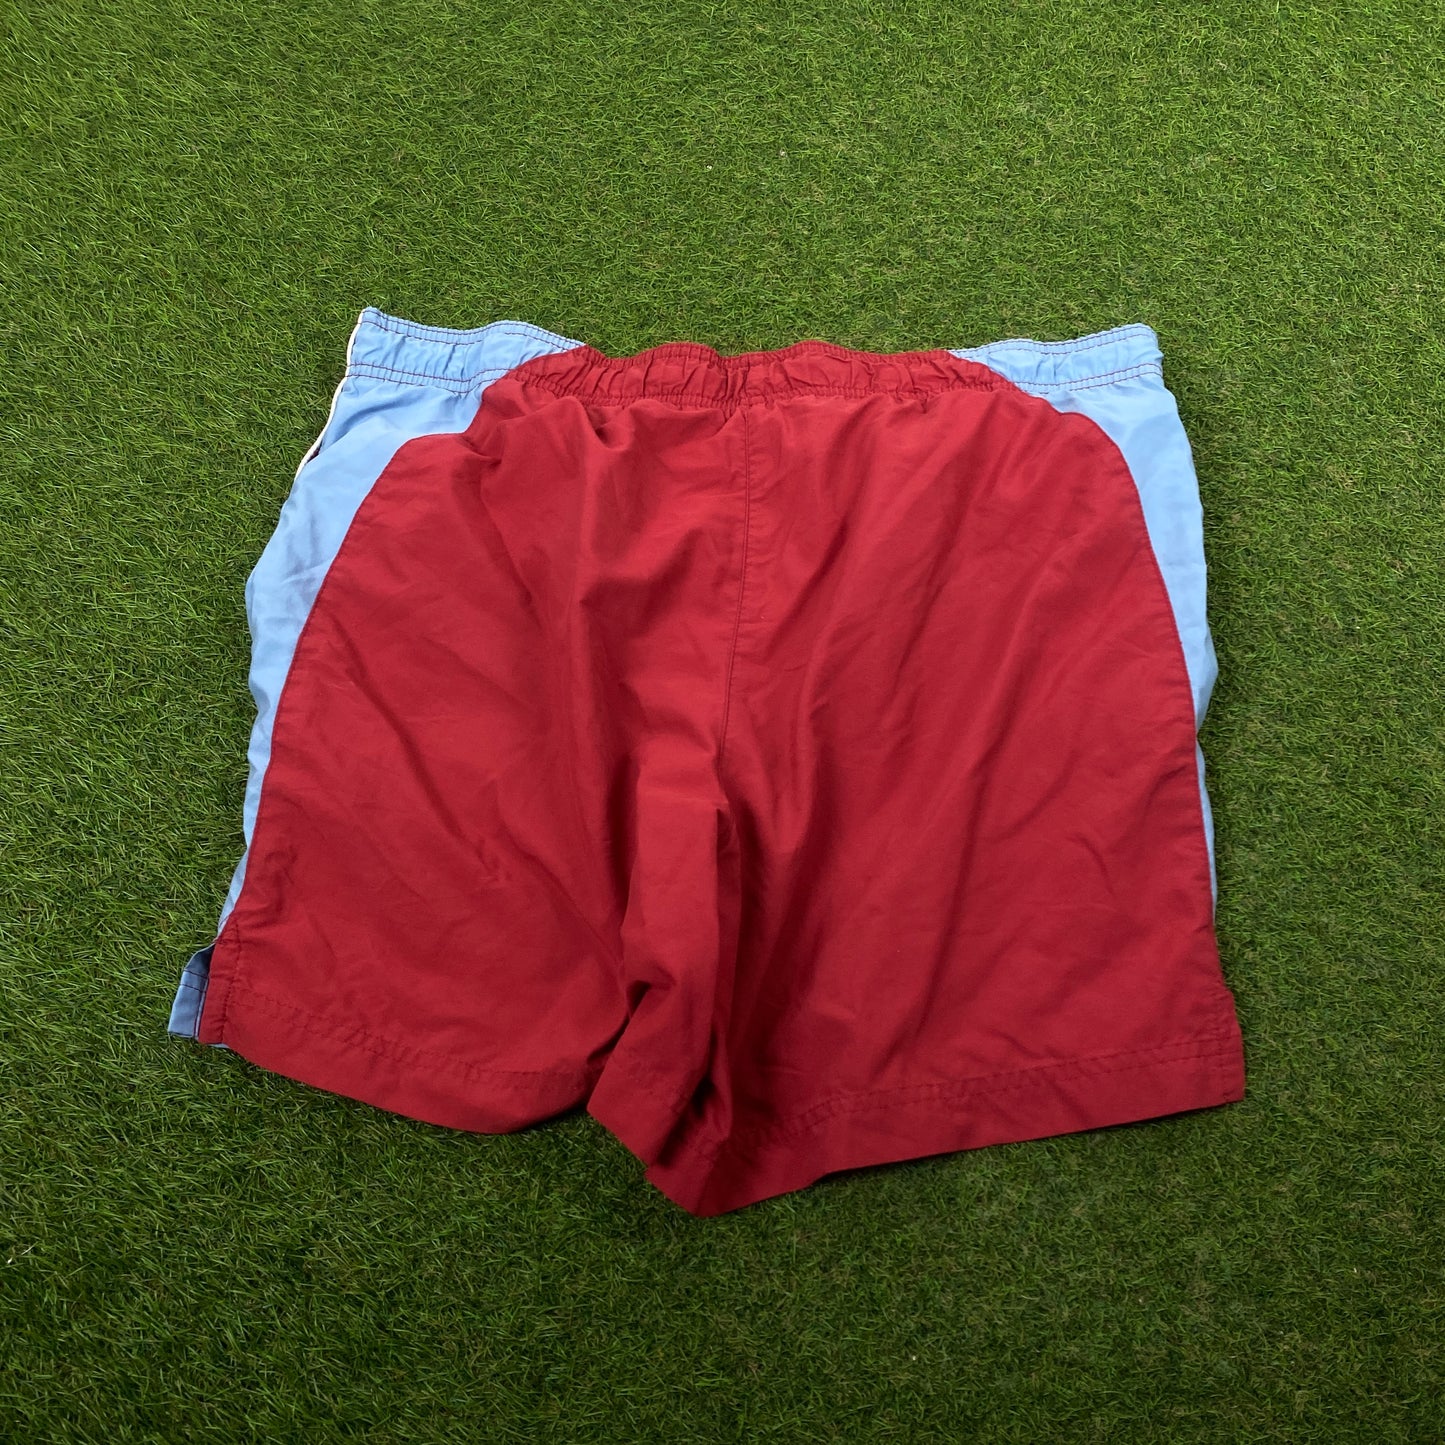 90s Nike Piping Shorts Red Medium